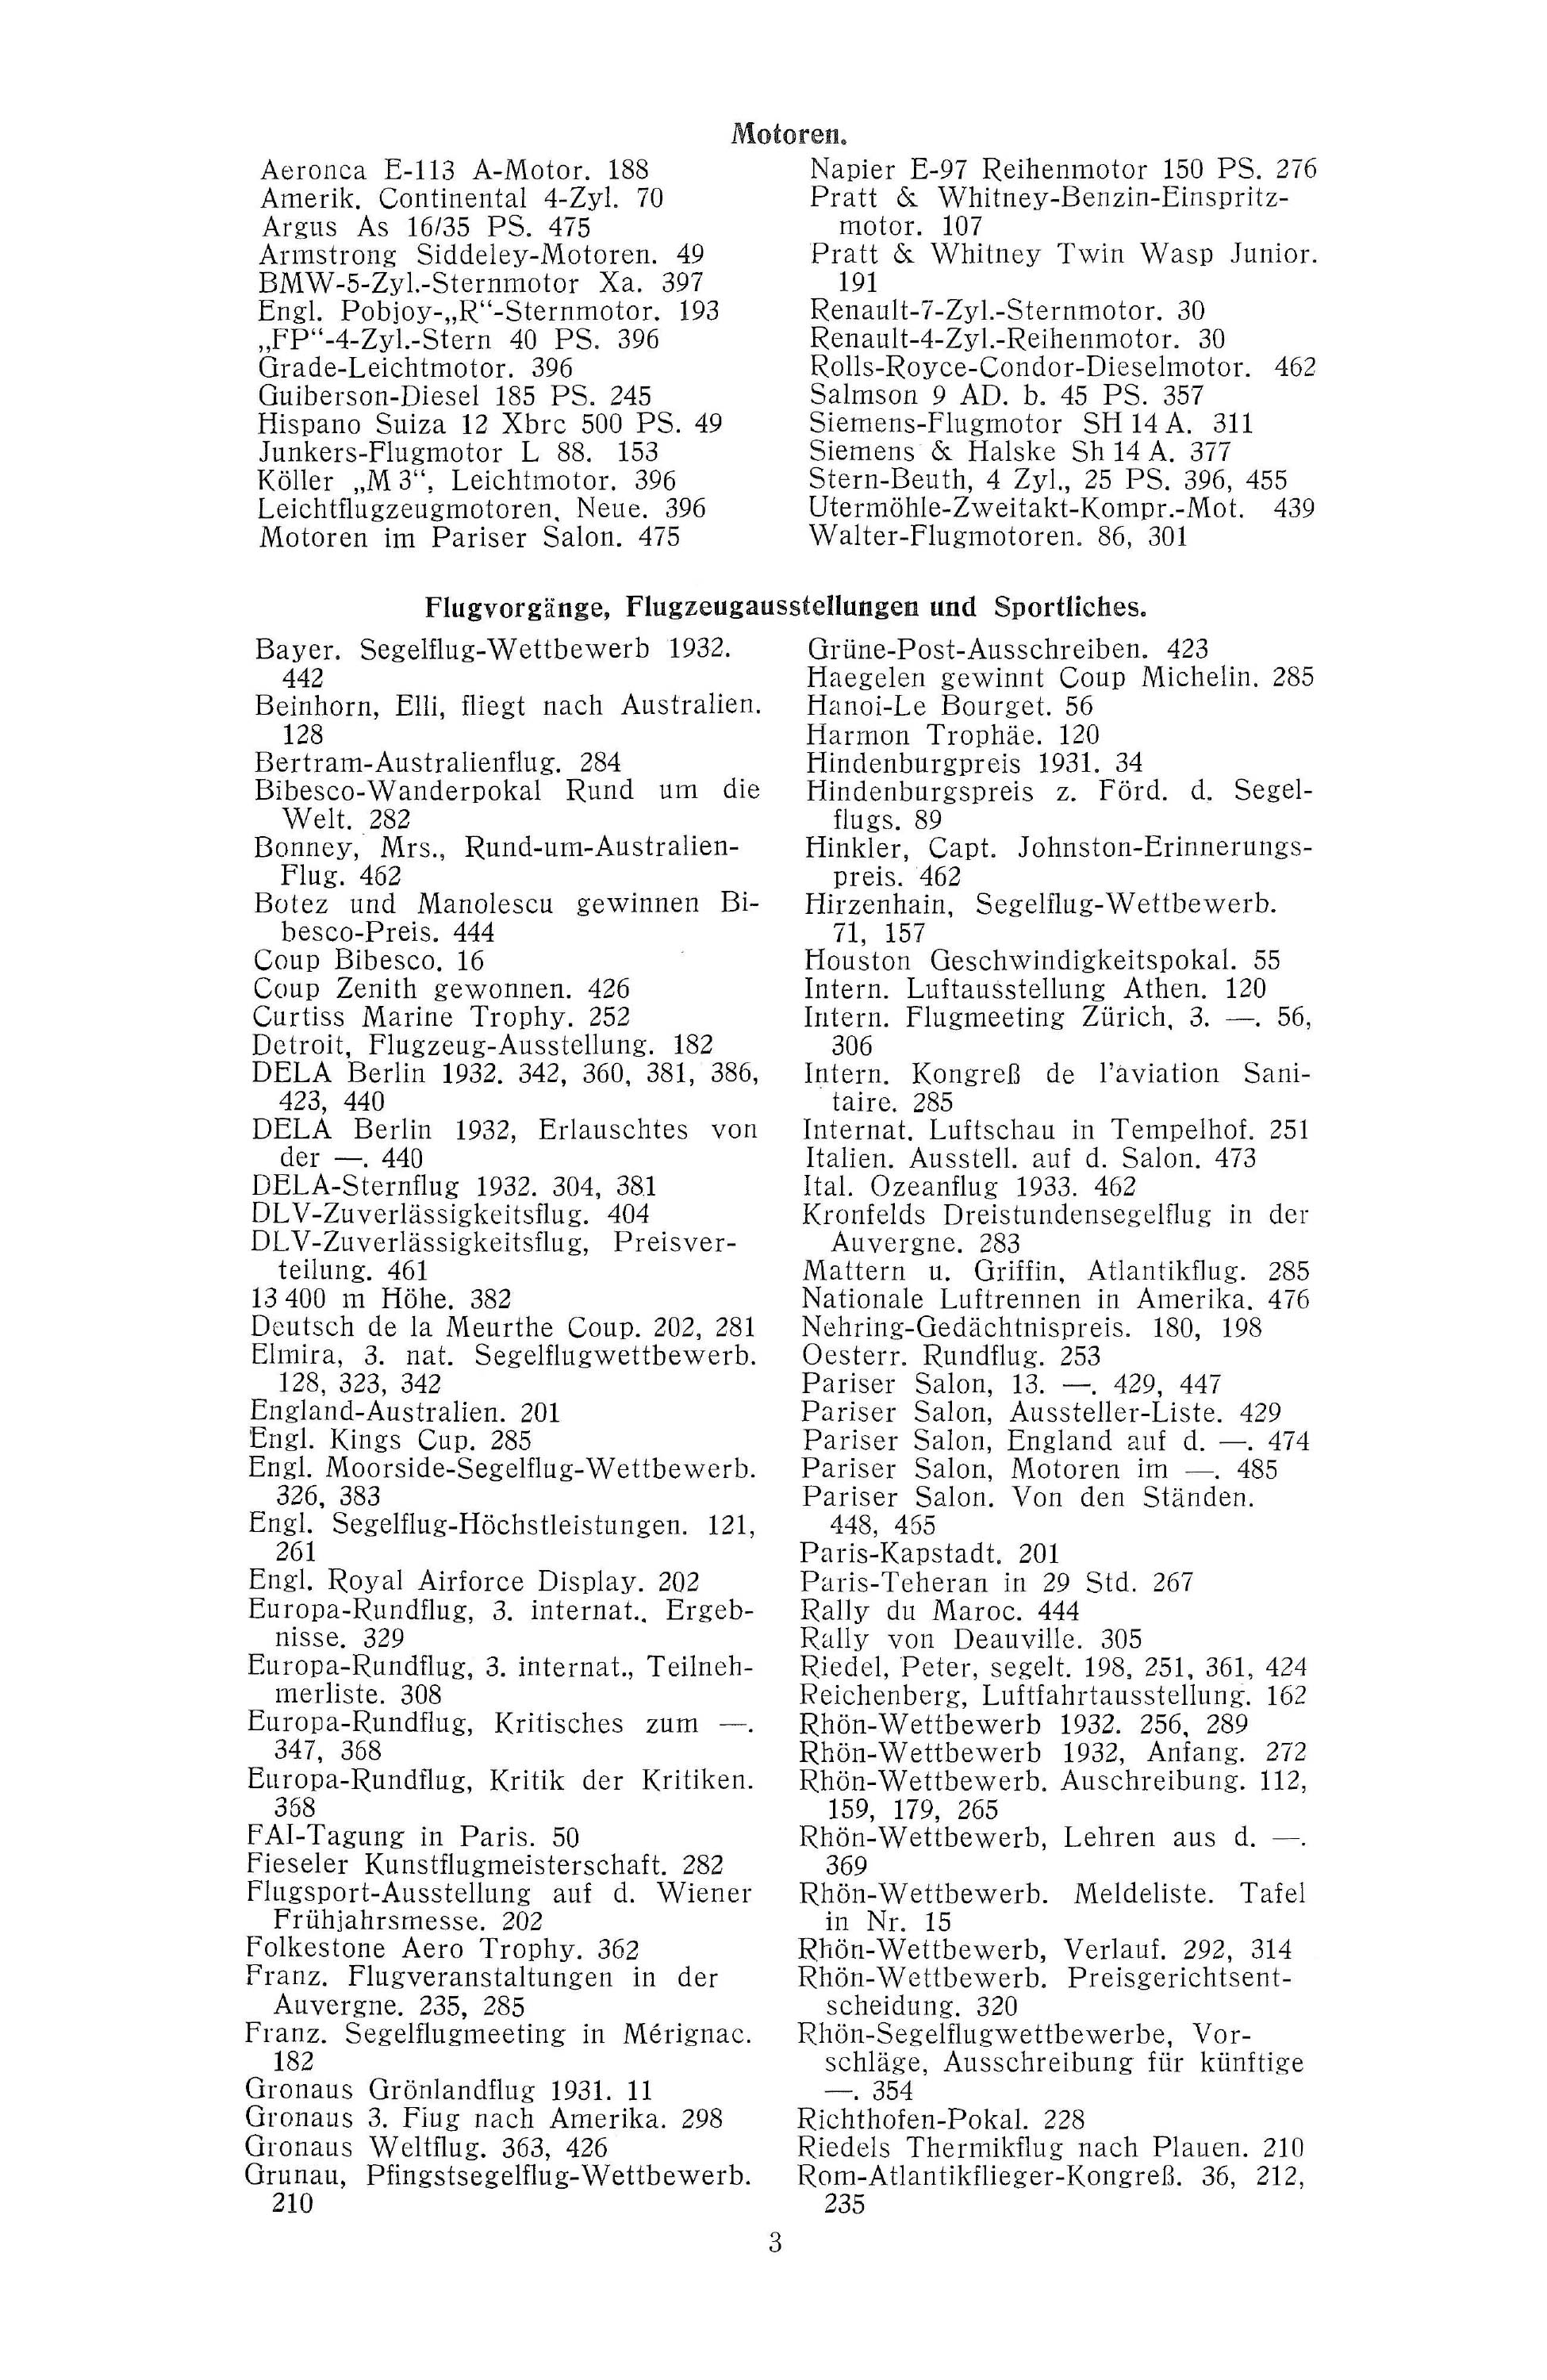 Sachregister und Inhaltsverzeichnis der Zeitschrift Flugsport 1932